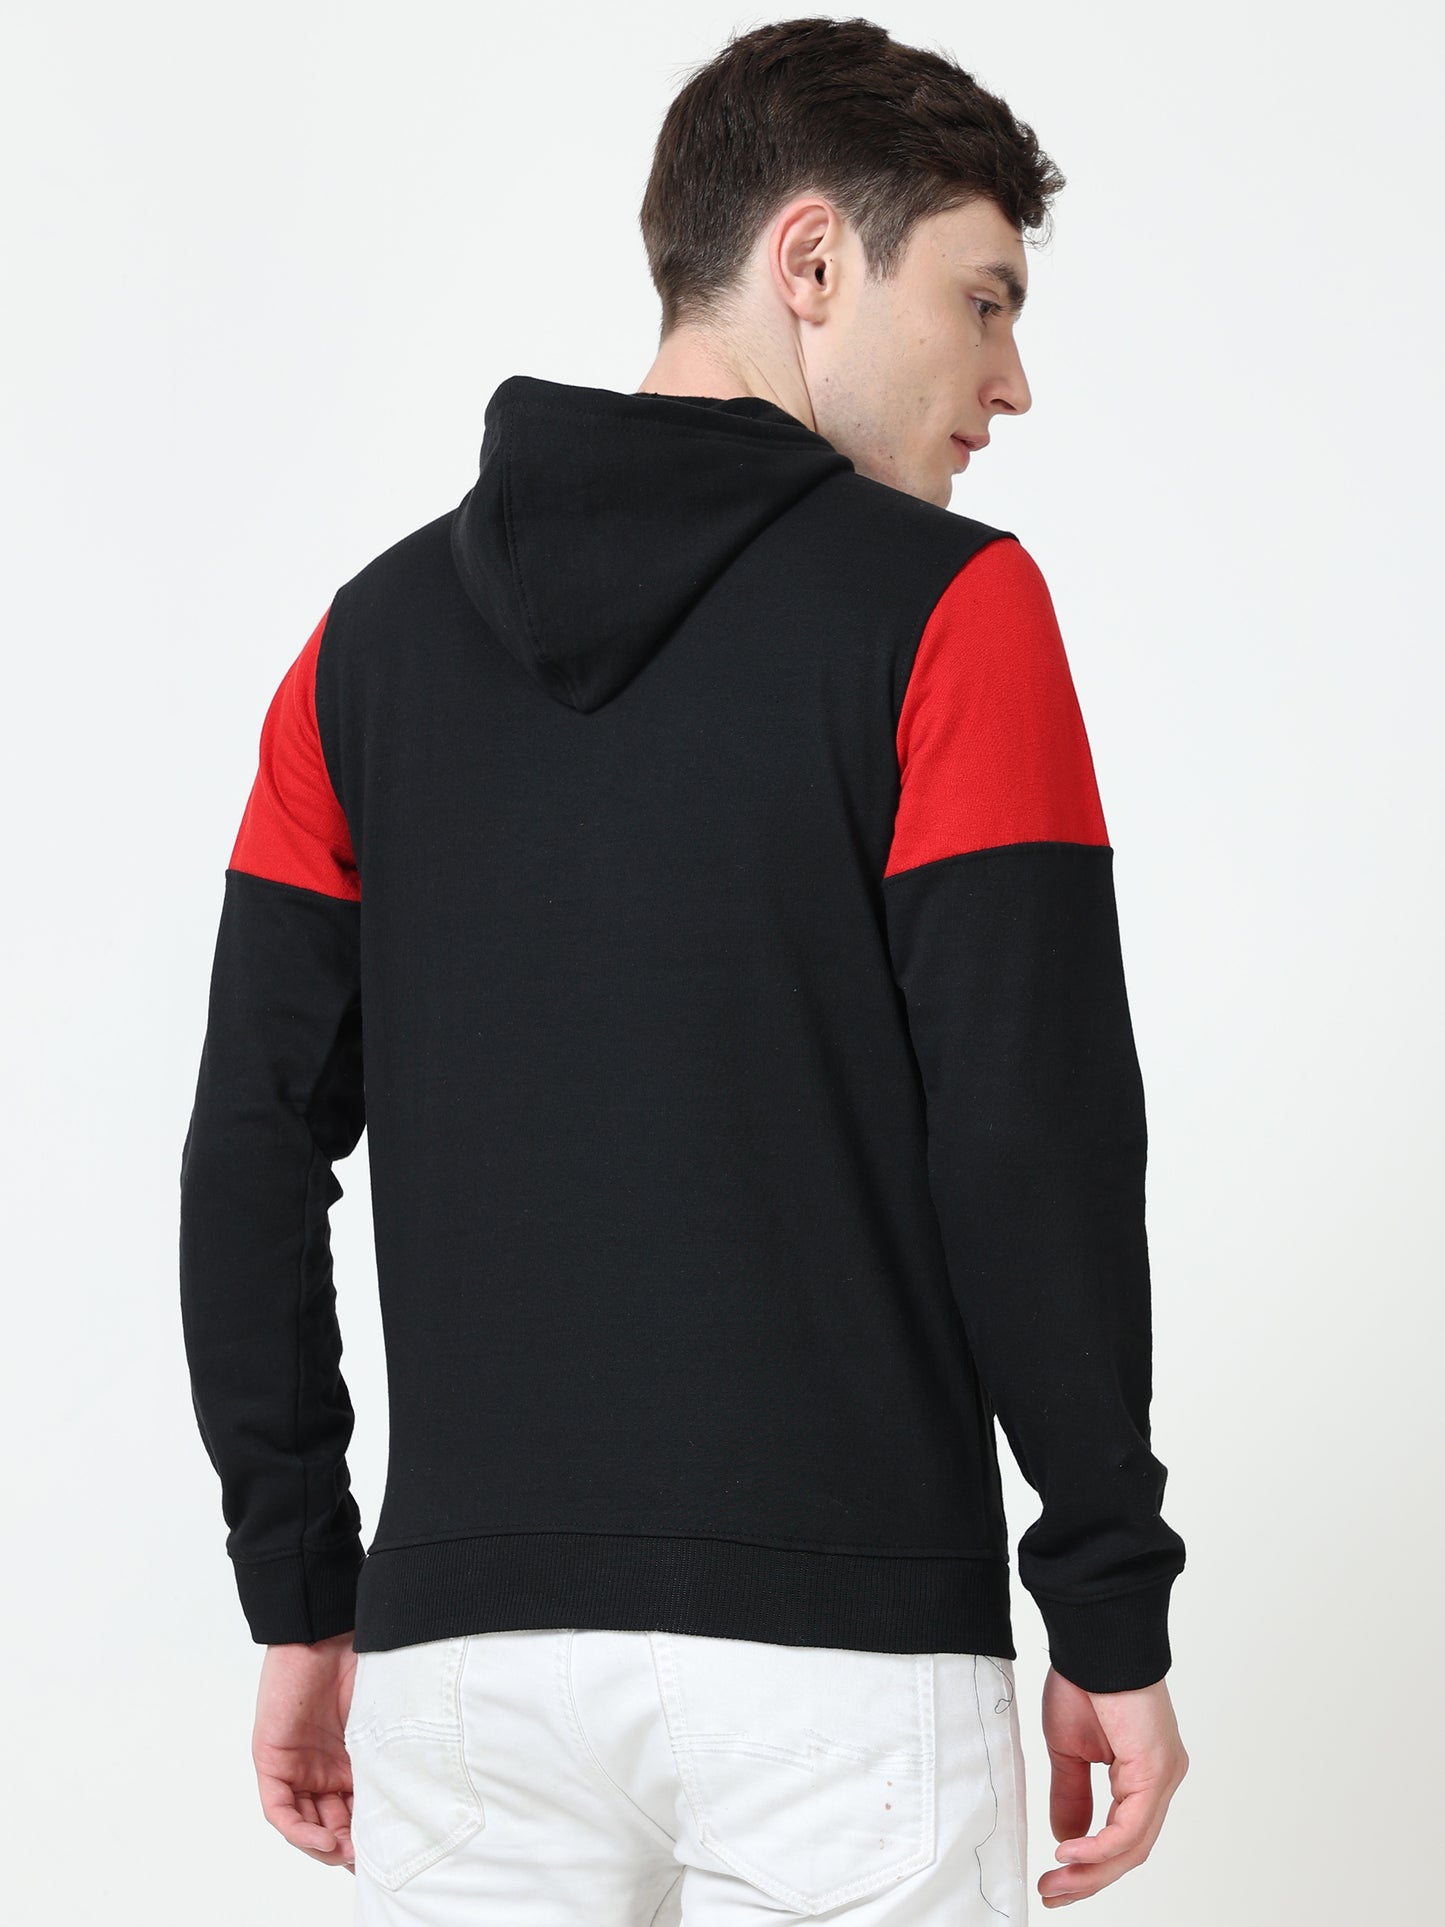 Men's Cotton Color Block Sweatshirt Redblack Color Hoodies